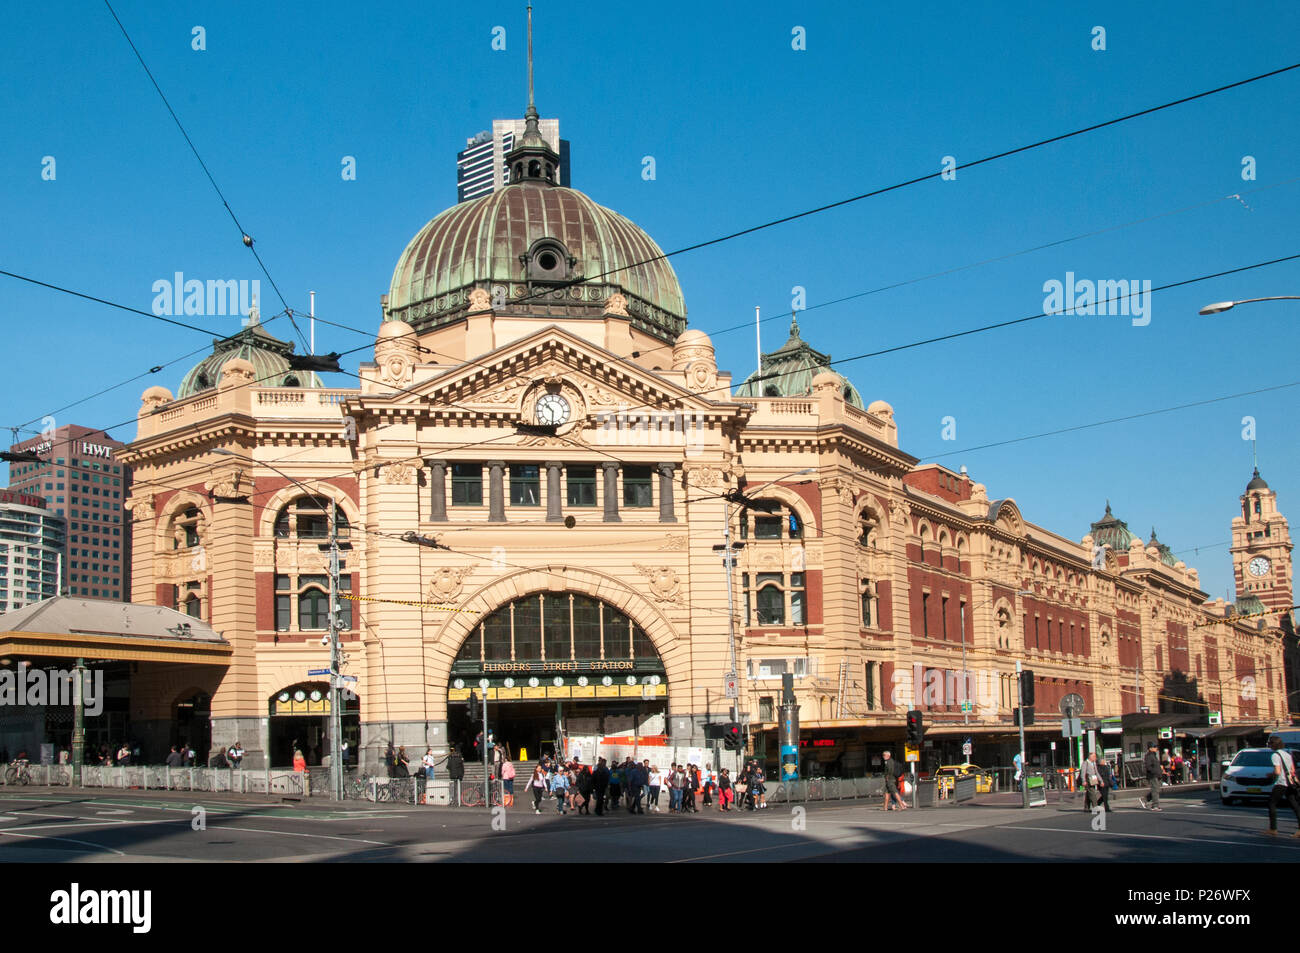 La estación de Flinders Street, concentrador de la red ferroviaria metropolitana de Melbourne, Australia, tras la realización de reparaciones en mayo de 2018 Foto de stock